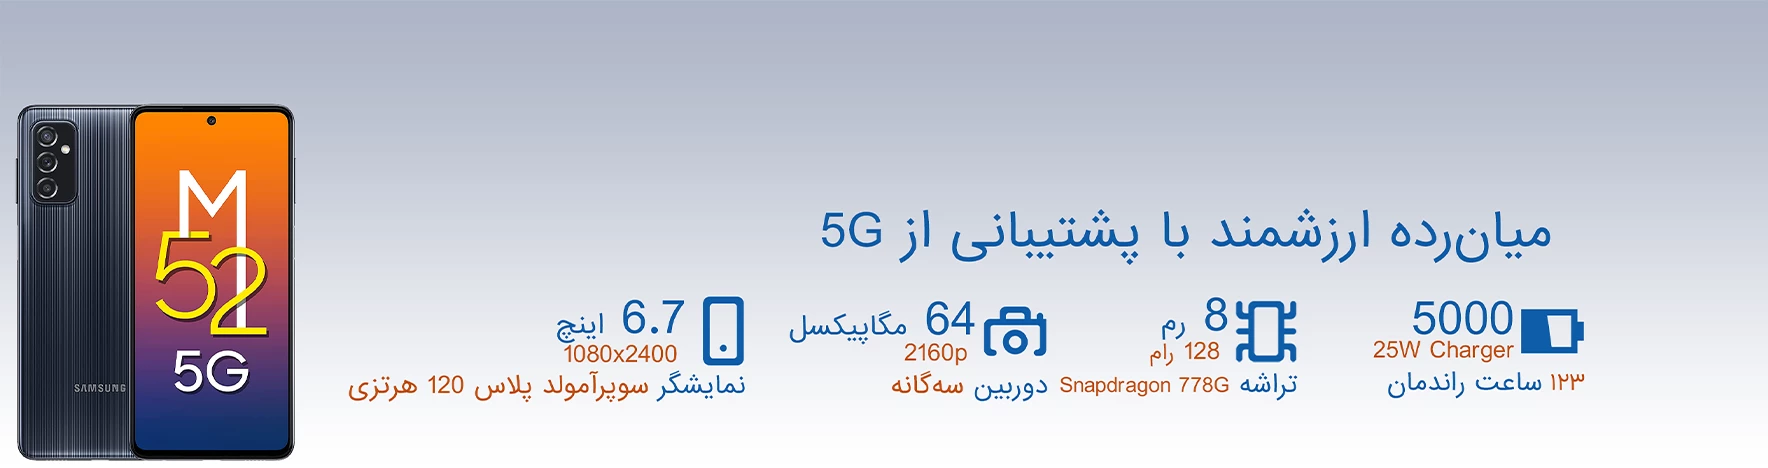 گوشی موبایل سامسونگ مدل Galaxy M۵۲ ظرفیت ۱۲۸ گیگابایت رم ۸ گیگابایت| ۵G